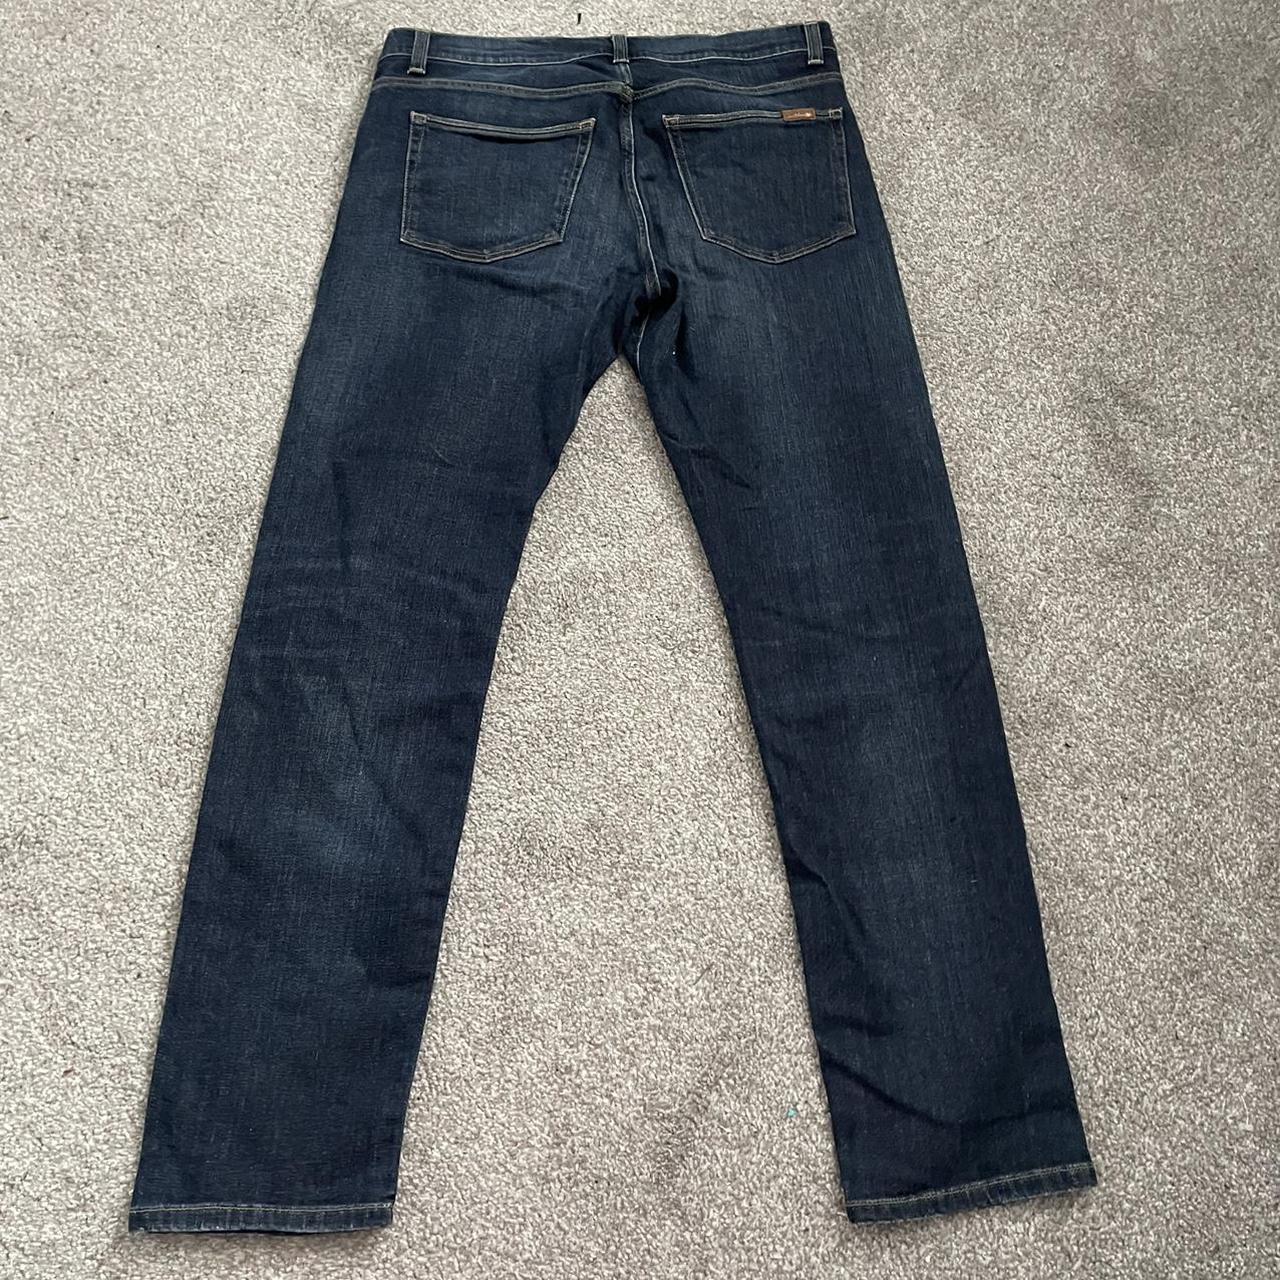 Carhartt Mens W32 L32 Blue Jeans Denim #Carhartt... - Depop